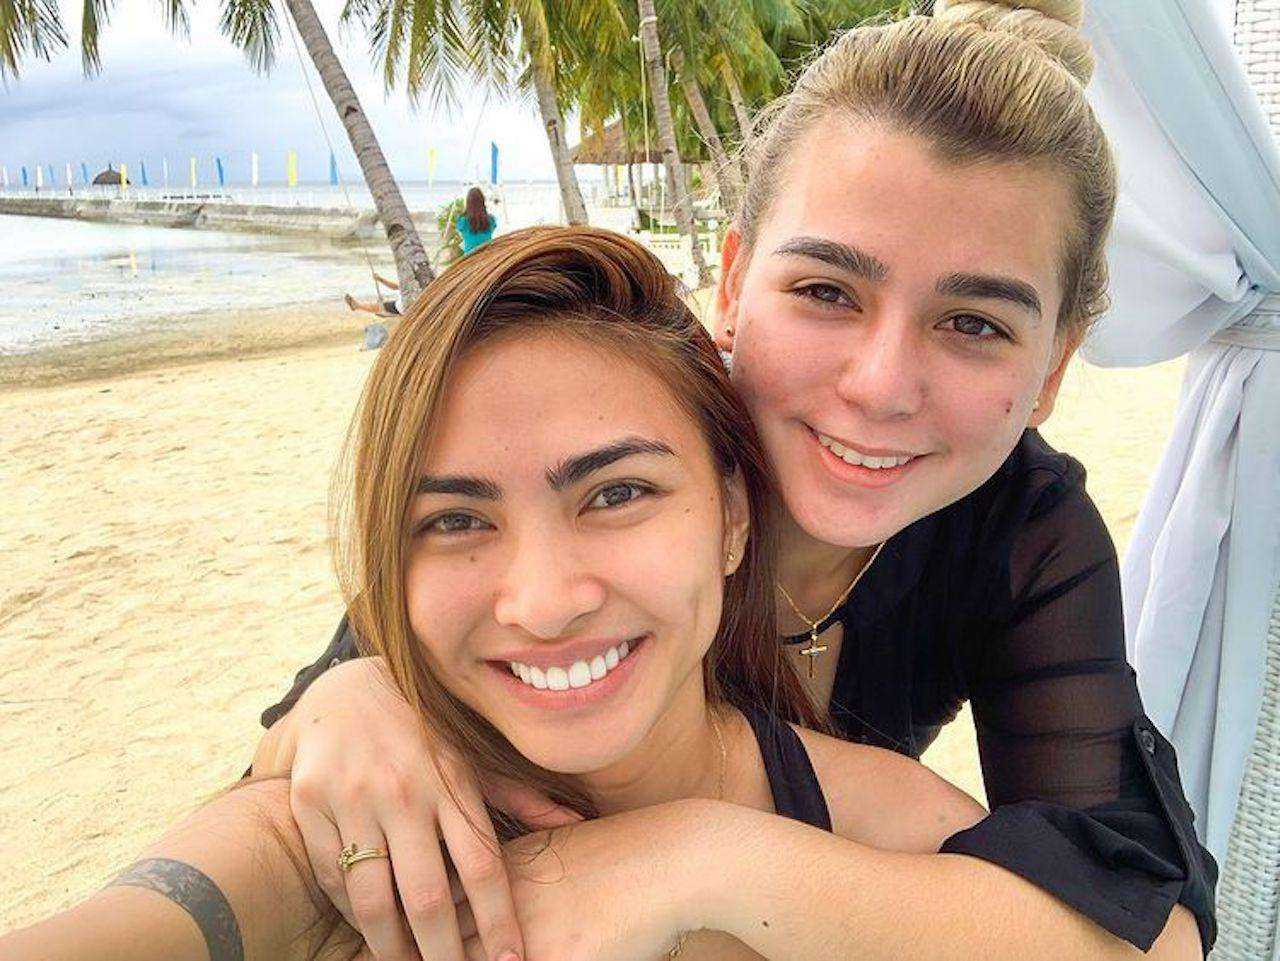 Tân Hoa hậu Hoàn vũ Philippines gây chú ý với chuyện tình đồng giới - ảnh 2